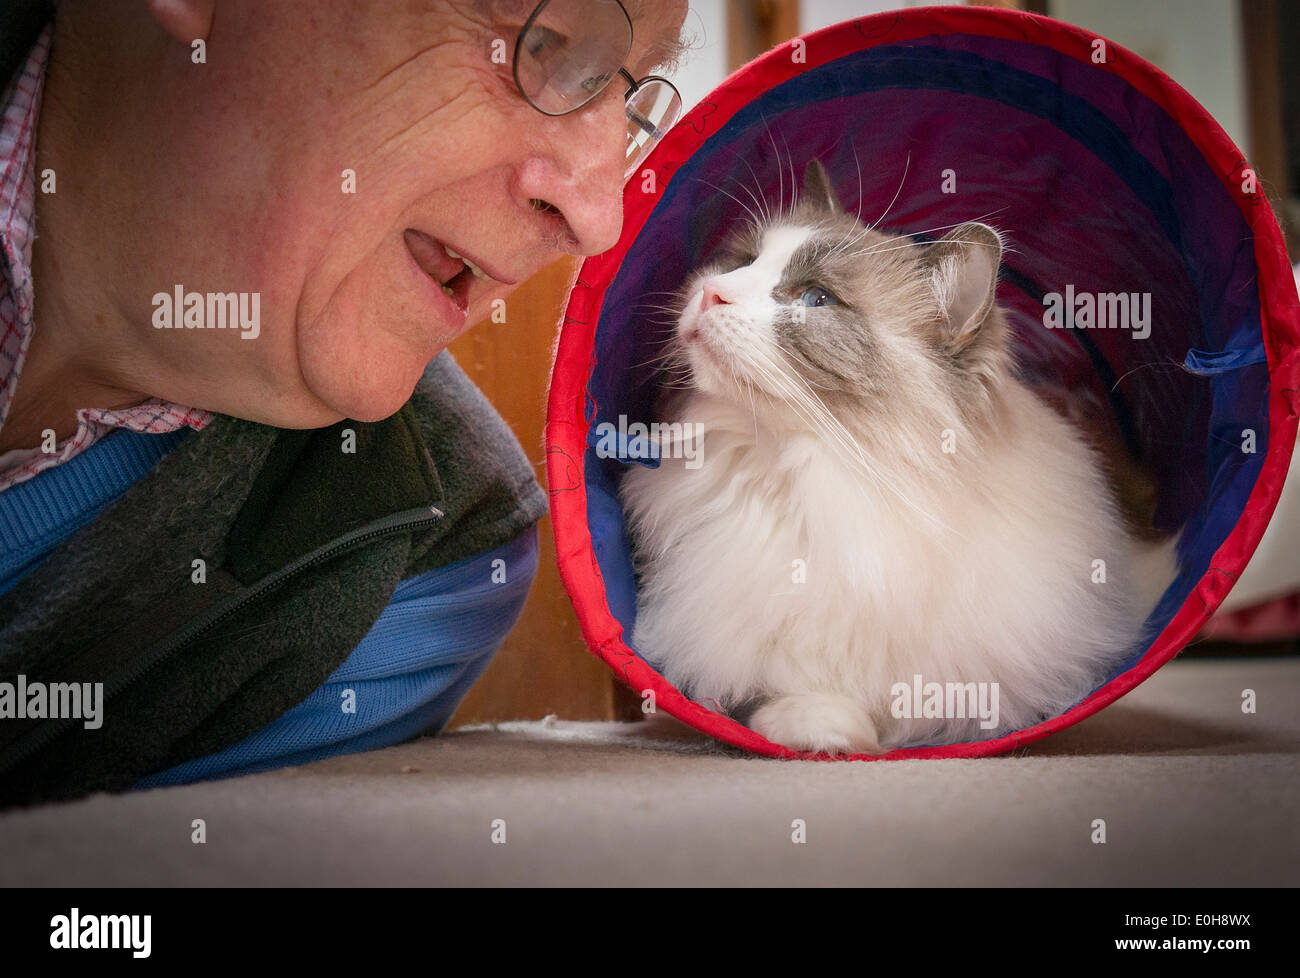 Propietario jugando con gato Ragdoll emergiendo de túnel de juguete Foto de stock